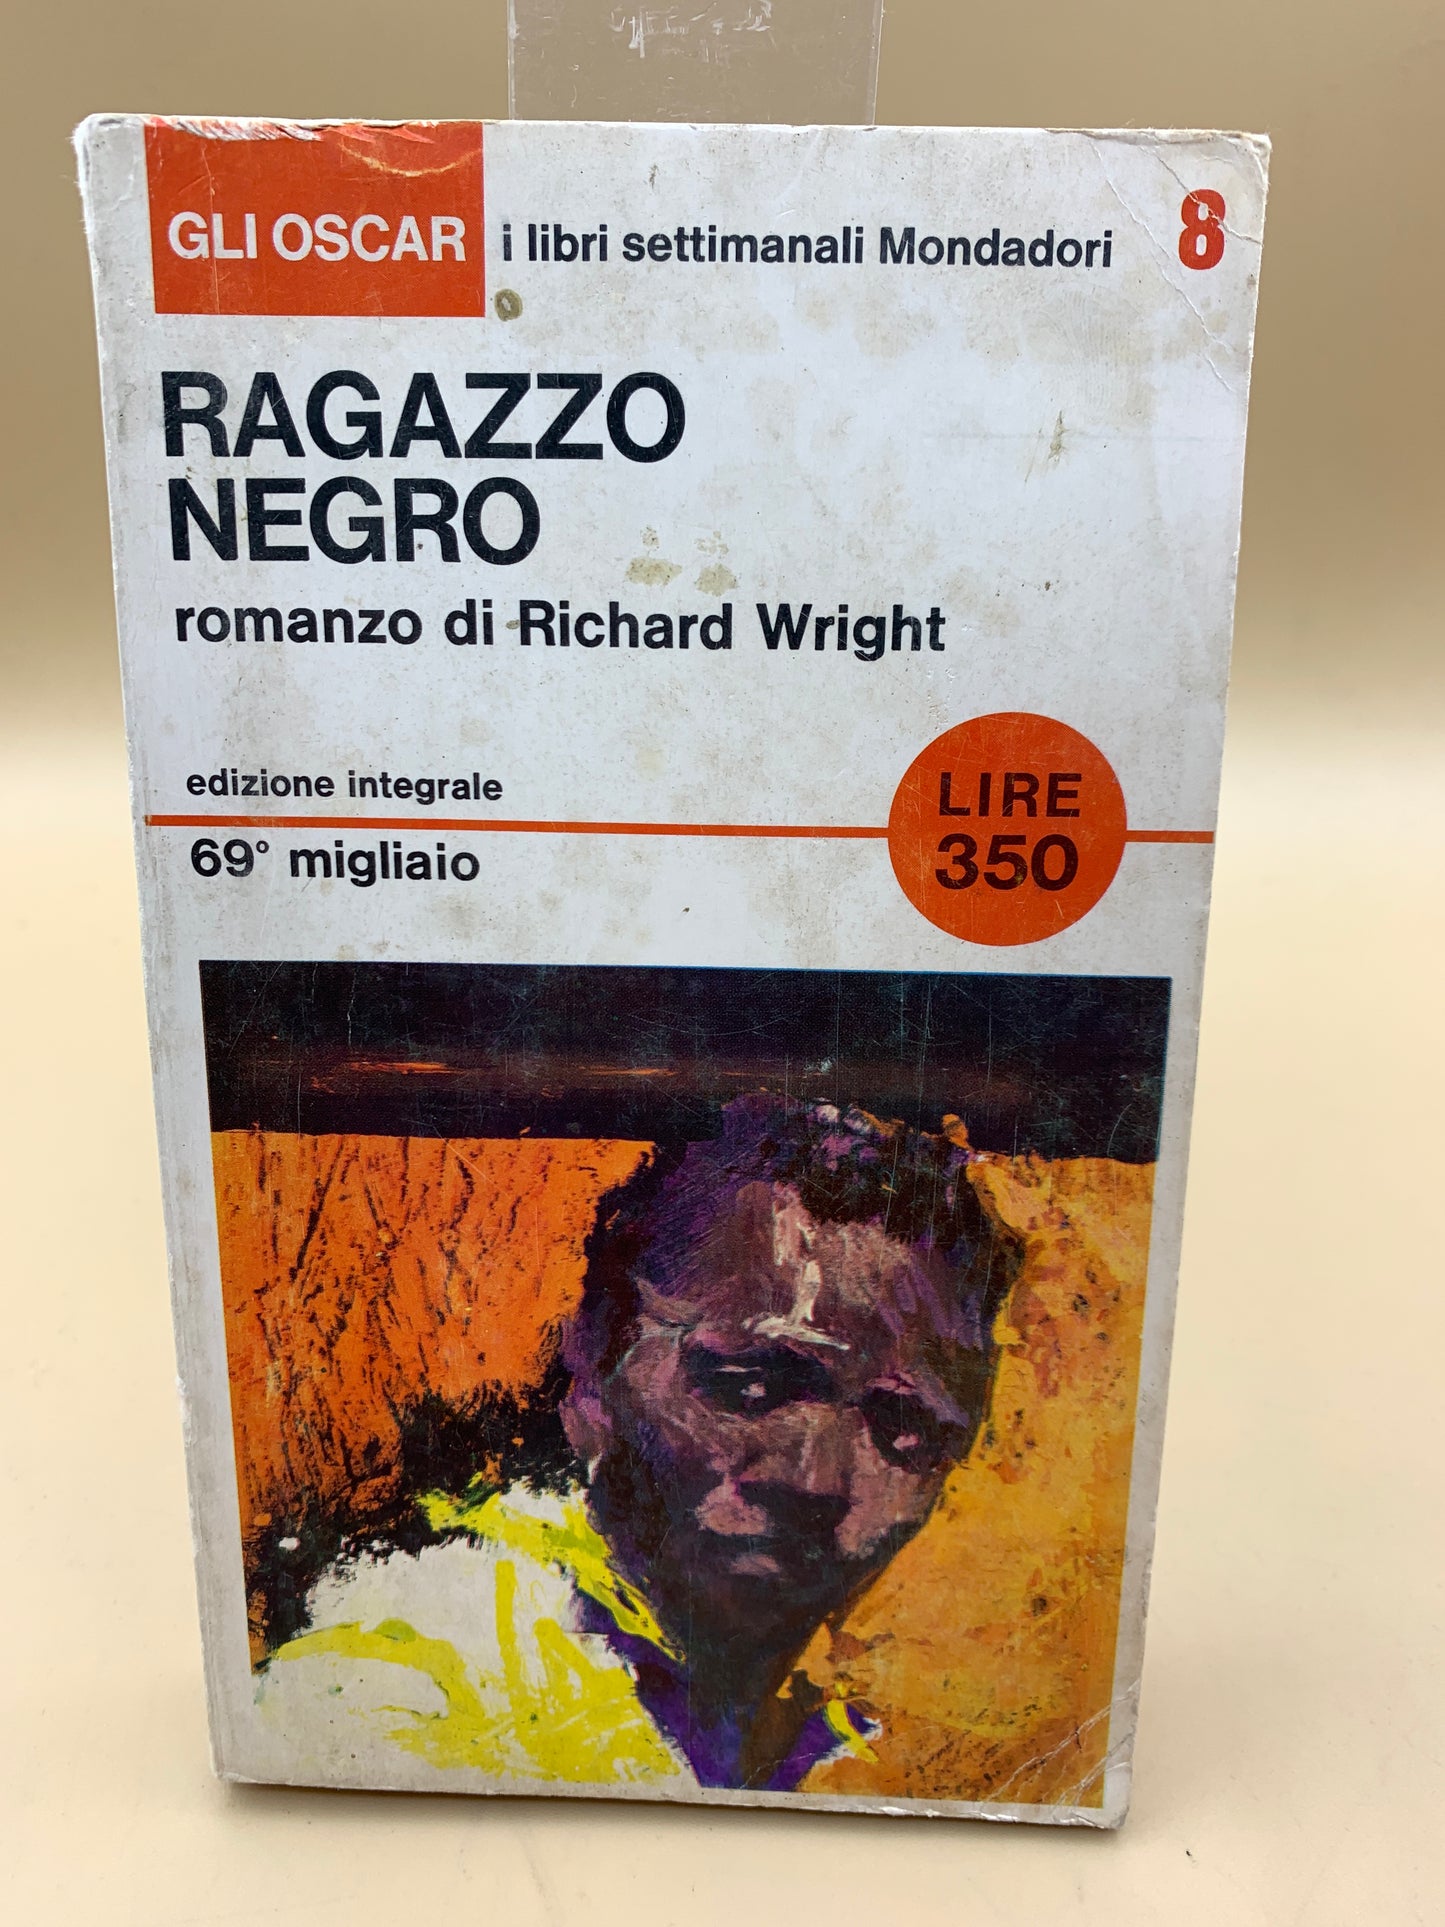 Black boy - Riccardo Wright